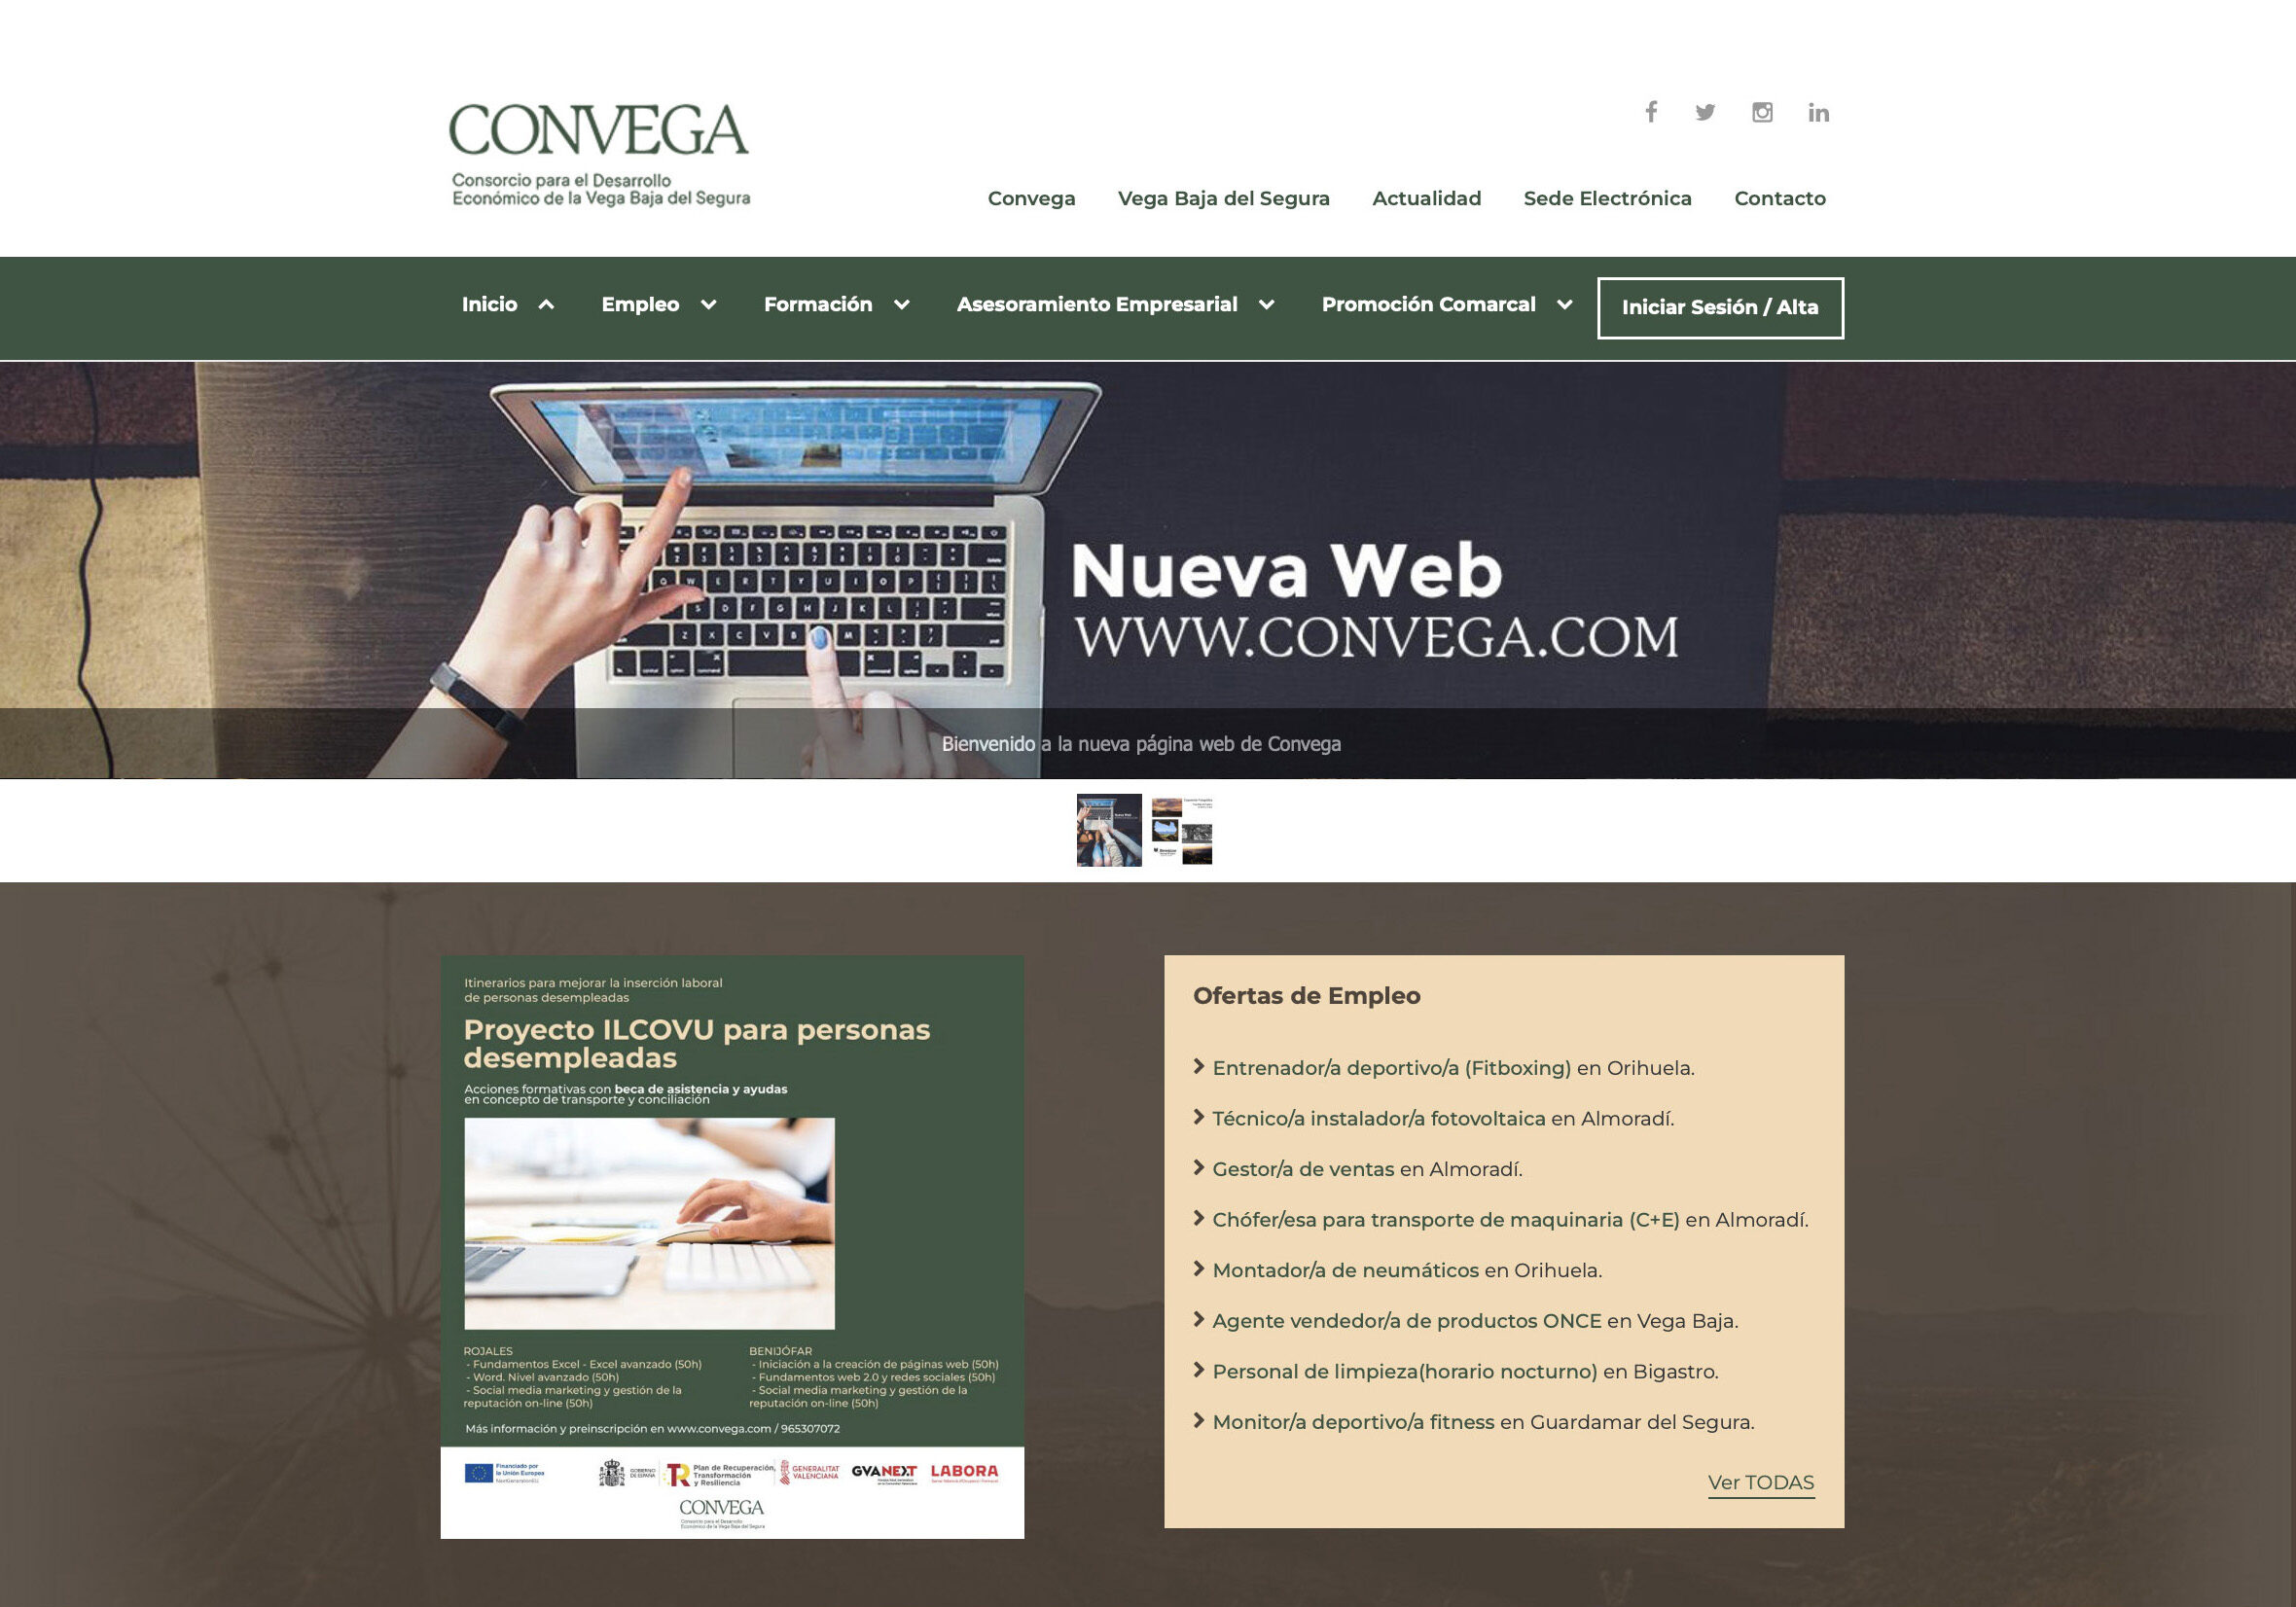 Aumentan un 10% las inscripciones en el portal web de empleo de Convega durante el primer semestre del año